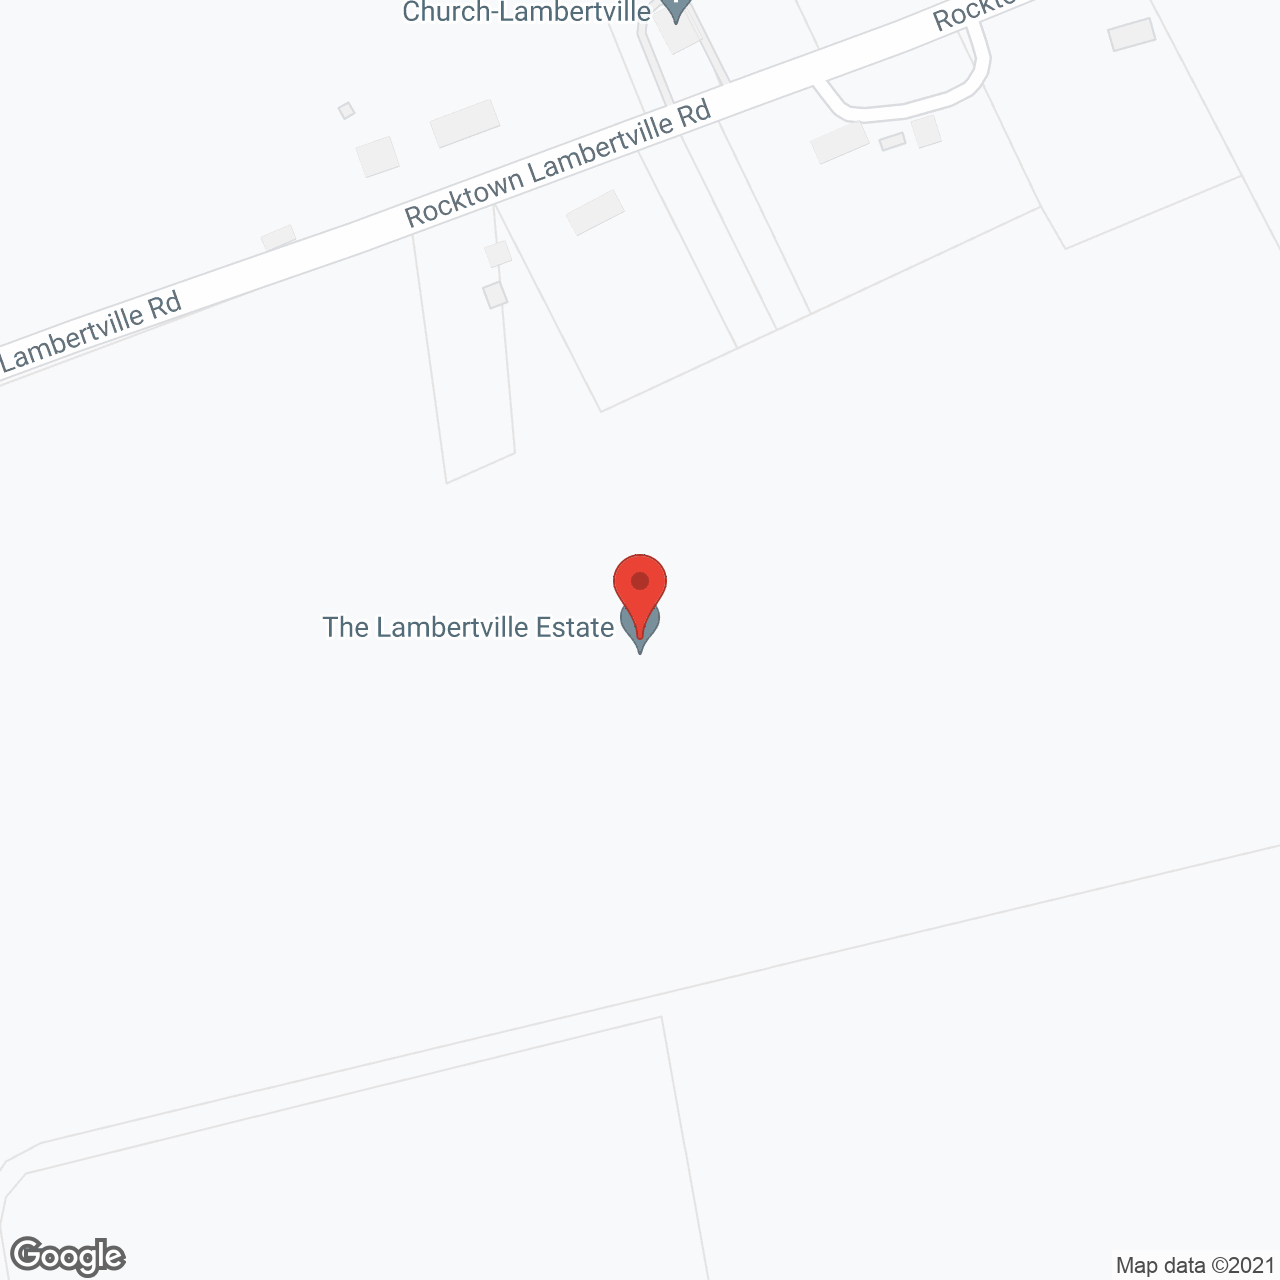 The Lambertville Estate in google map